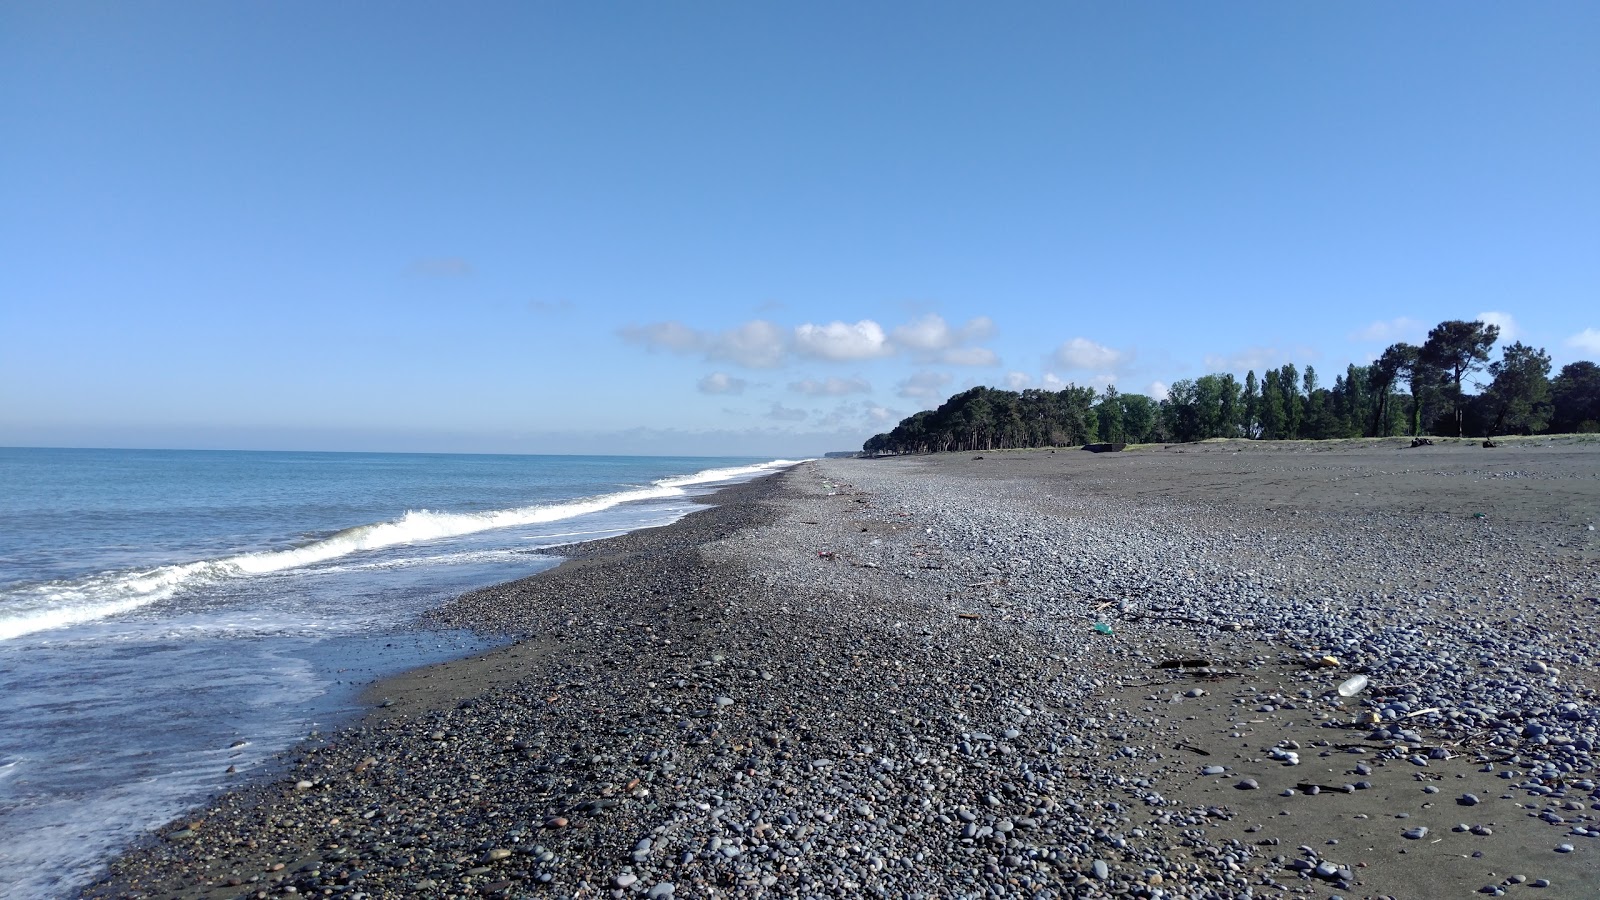 Zdjęcie Kobuleti beach III - popularne miejsce wśród znawców relaksu